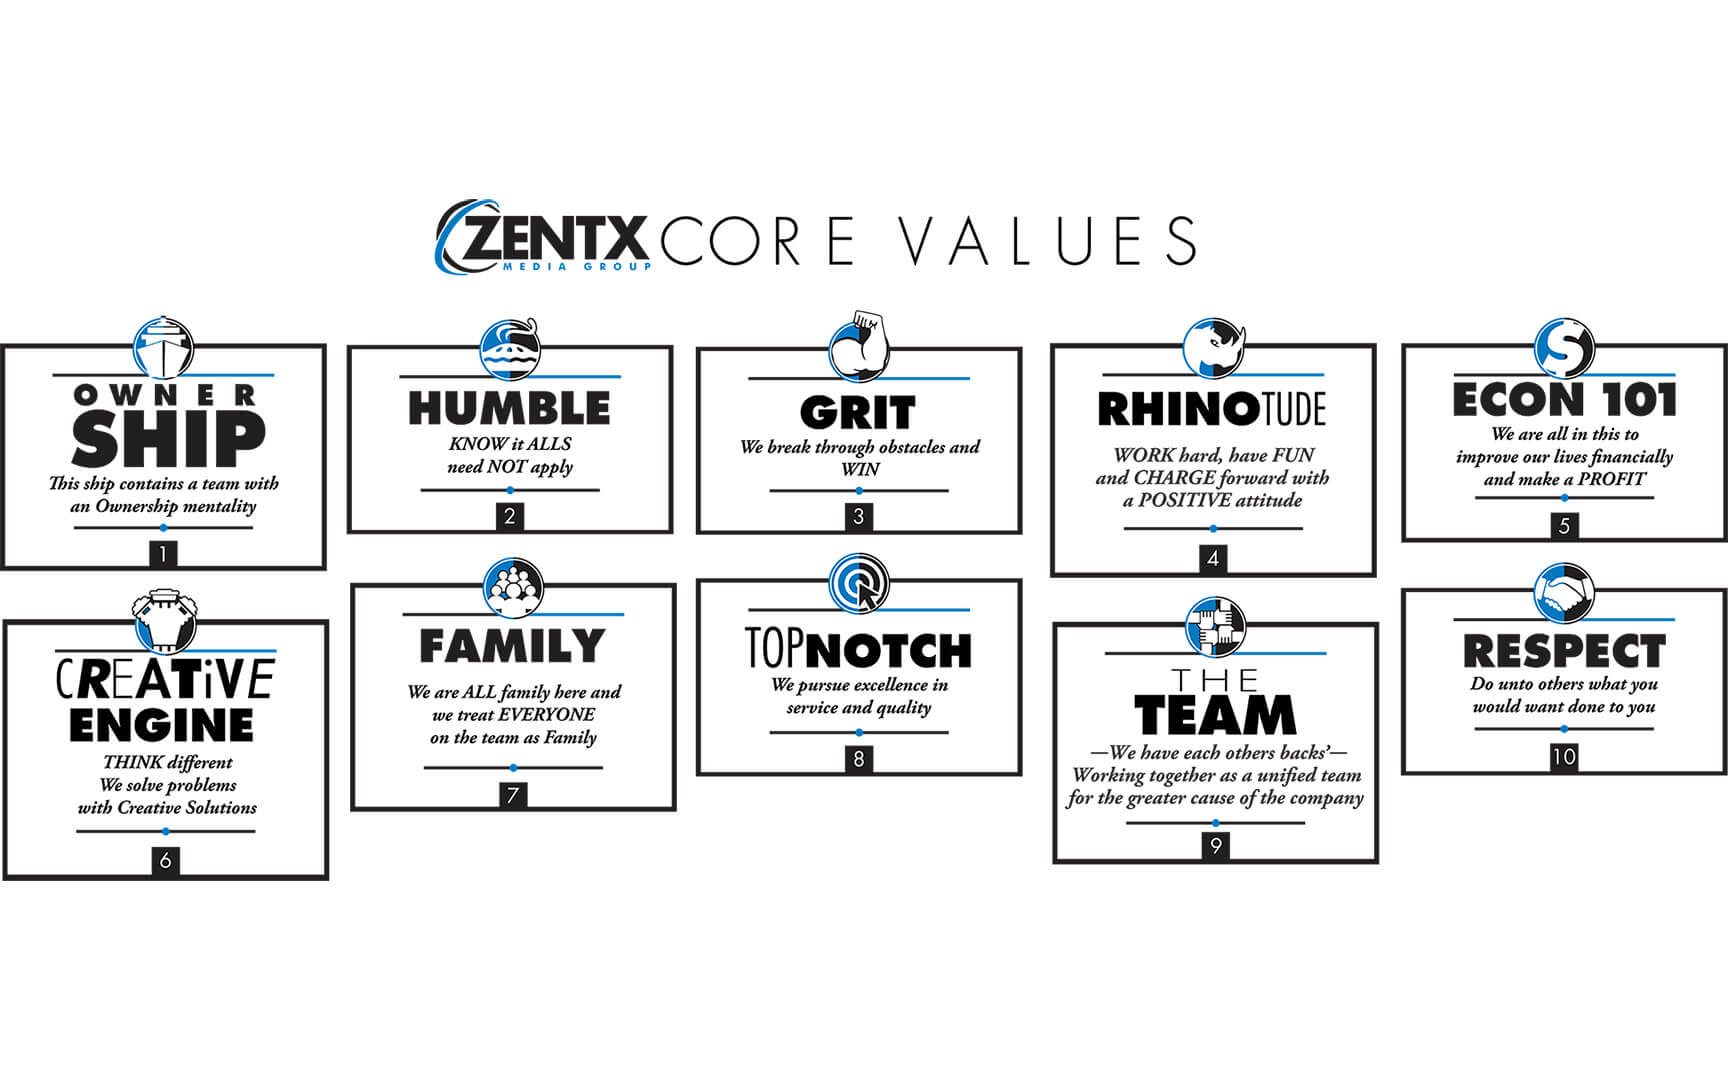 ZENTX Core Values